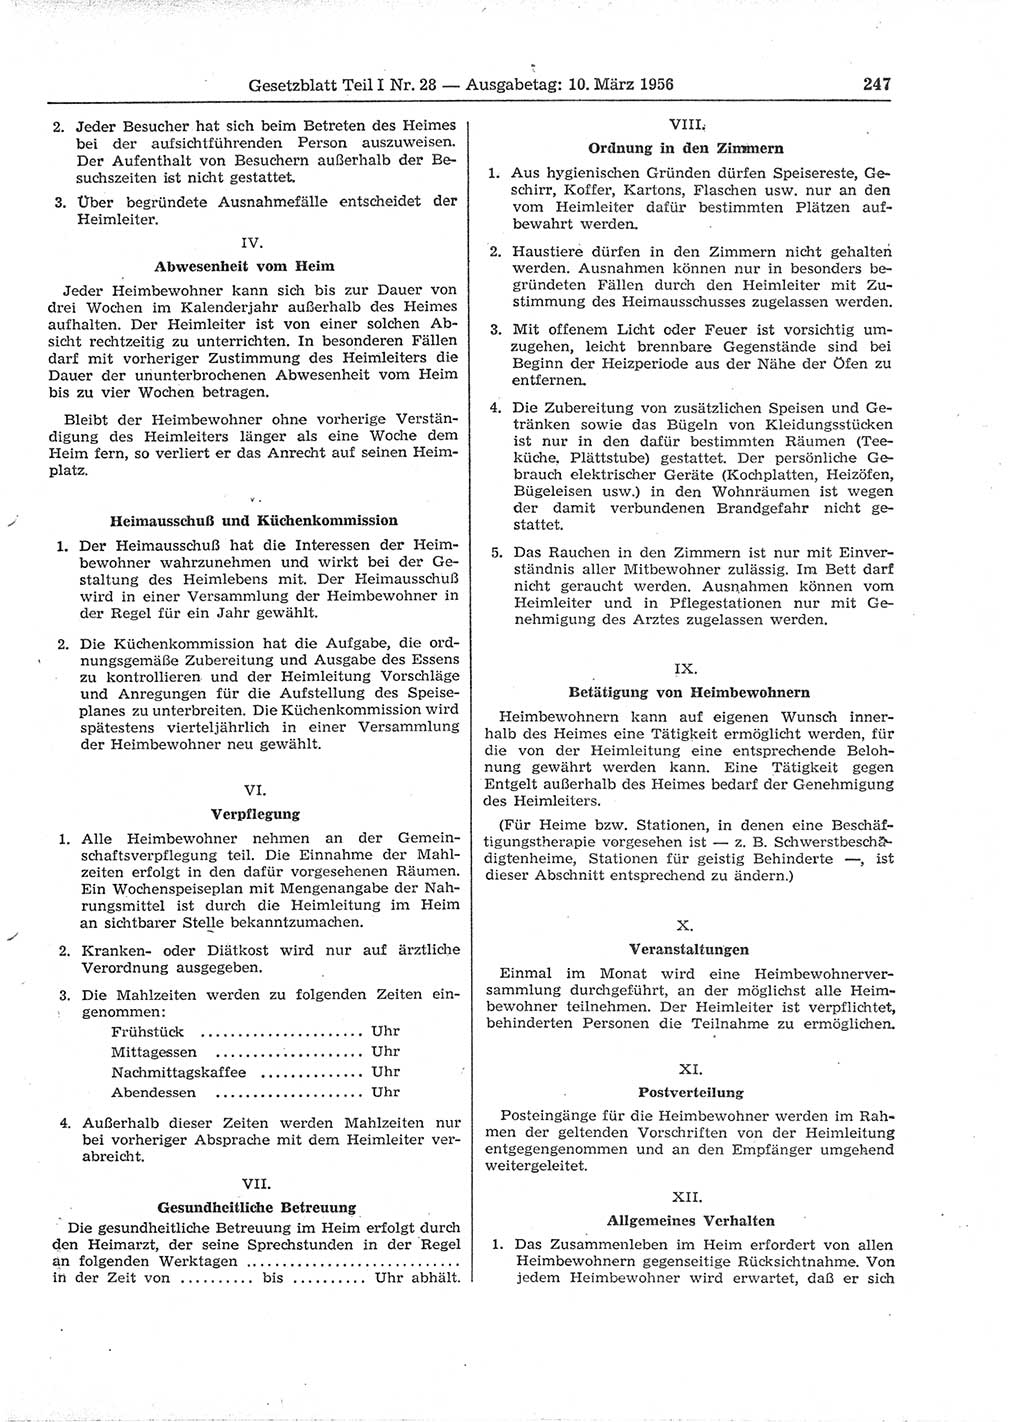 Gesetzblatt (GBl.) der Deutschen Demokratischen Republik (DDR) Teil Ⅰ 1956, Seite 247 (GBl. DDR Ⅰ 1956, S. 247)